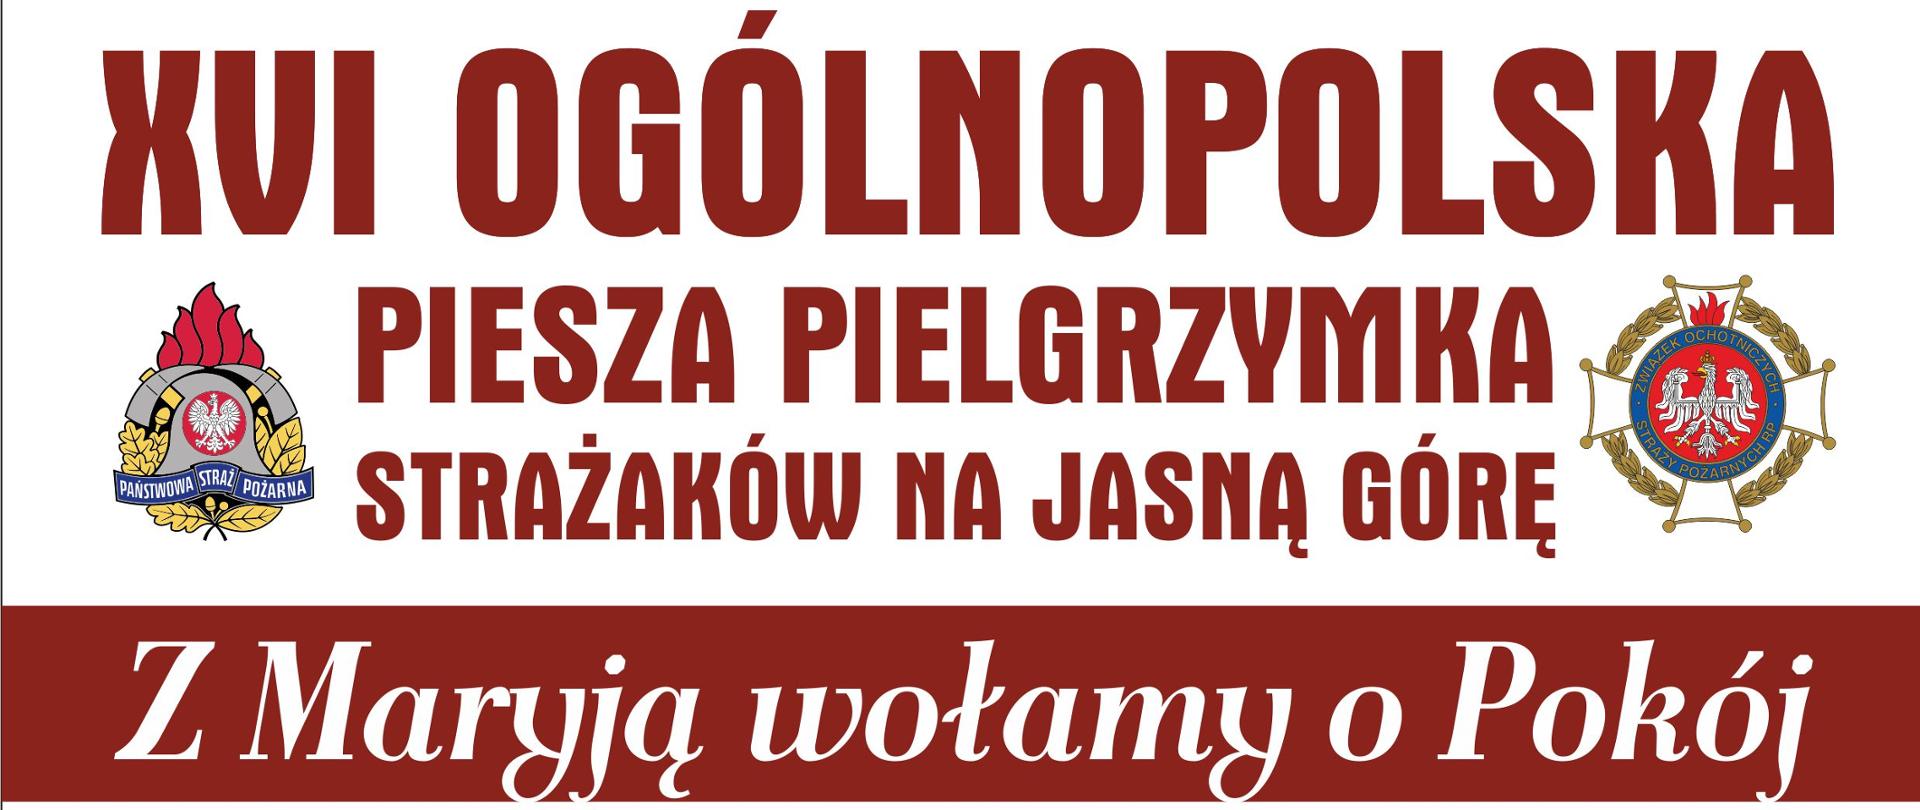 plakat promujący XVI Ogólnopolską Pieszą Pielgrzymkę Strażaków na Jasną Górę